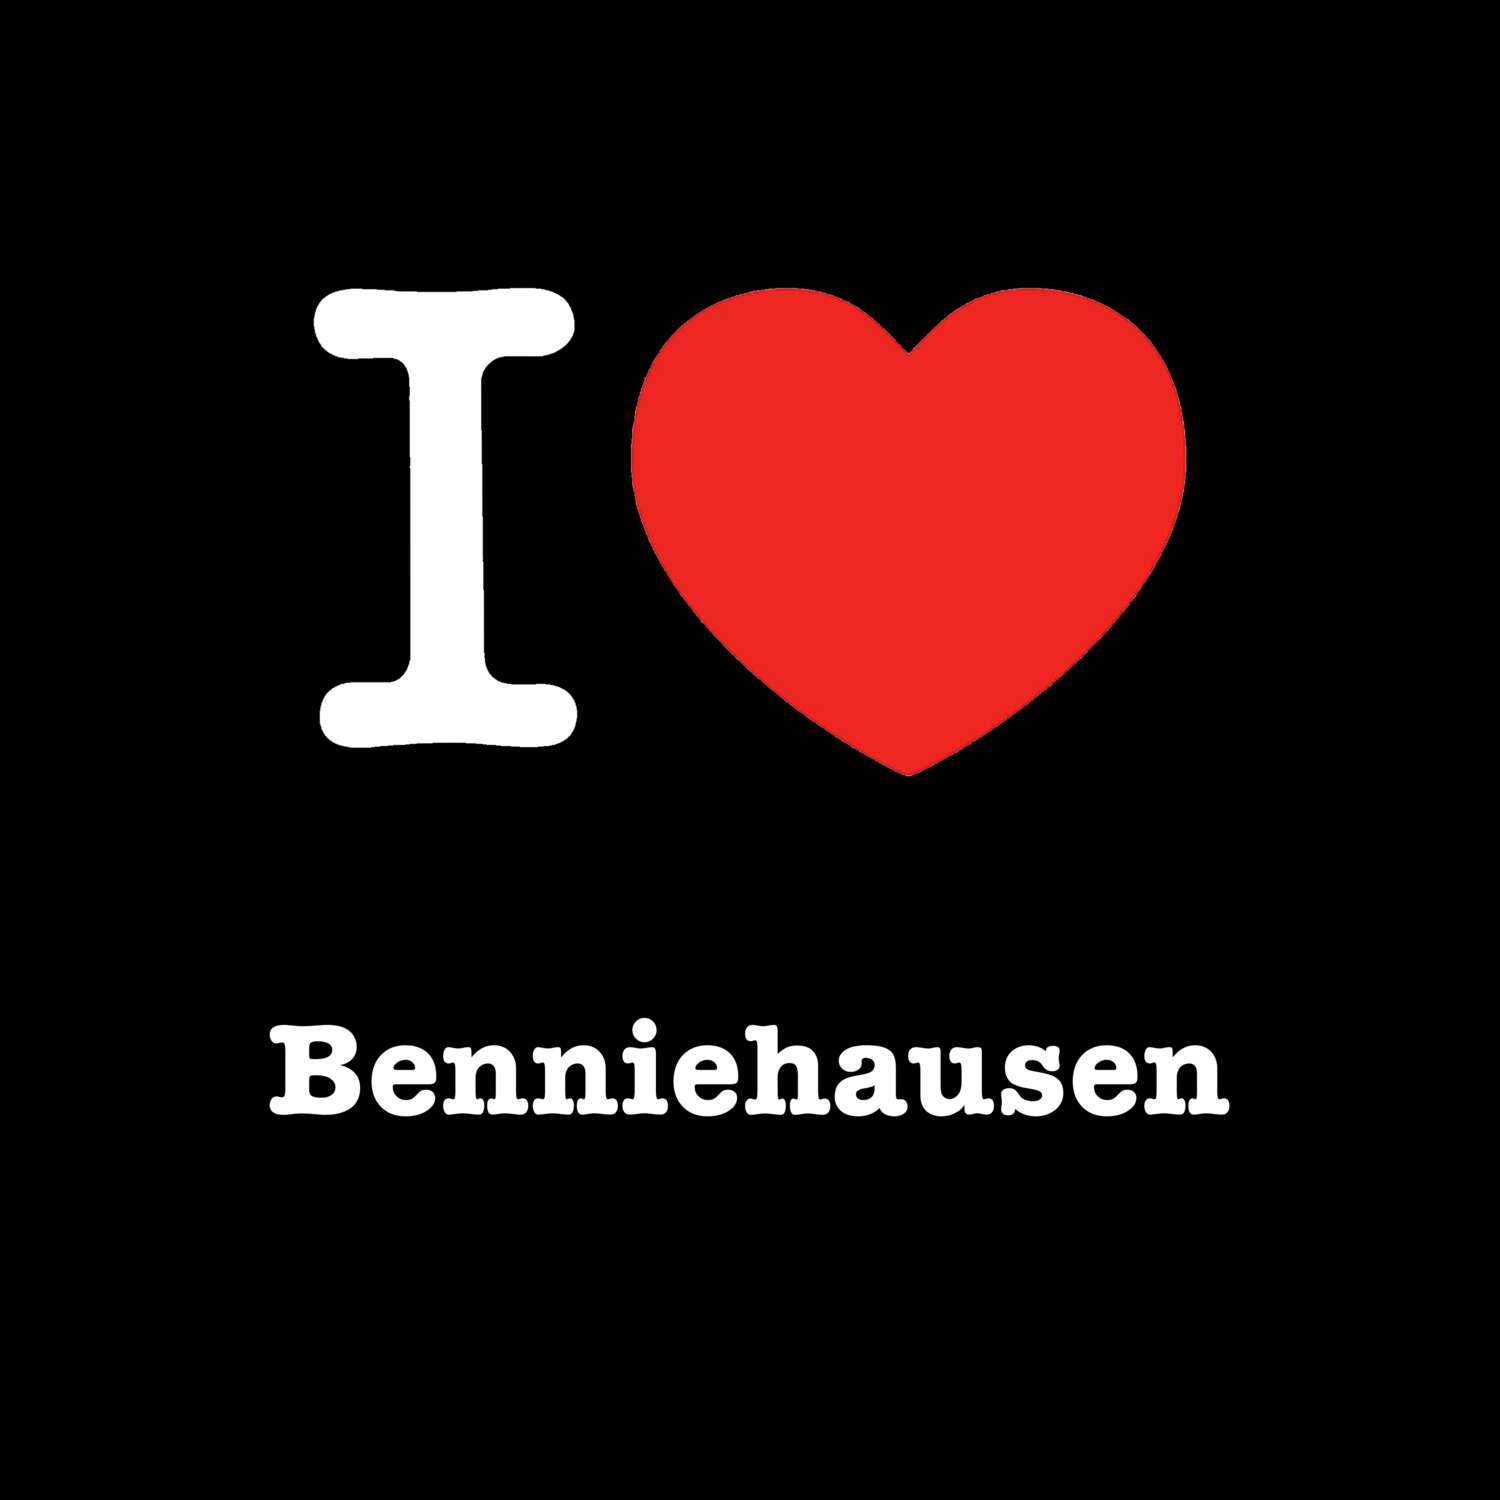 Benniehausen T-Shirt »I love«